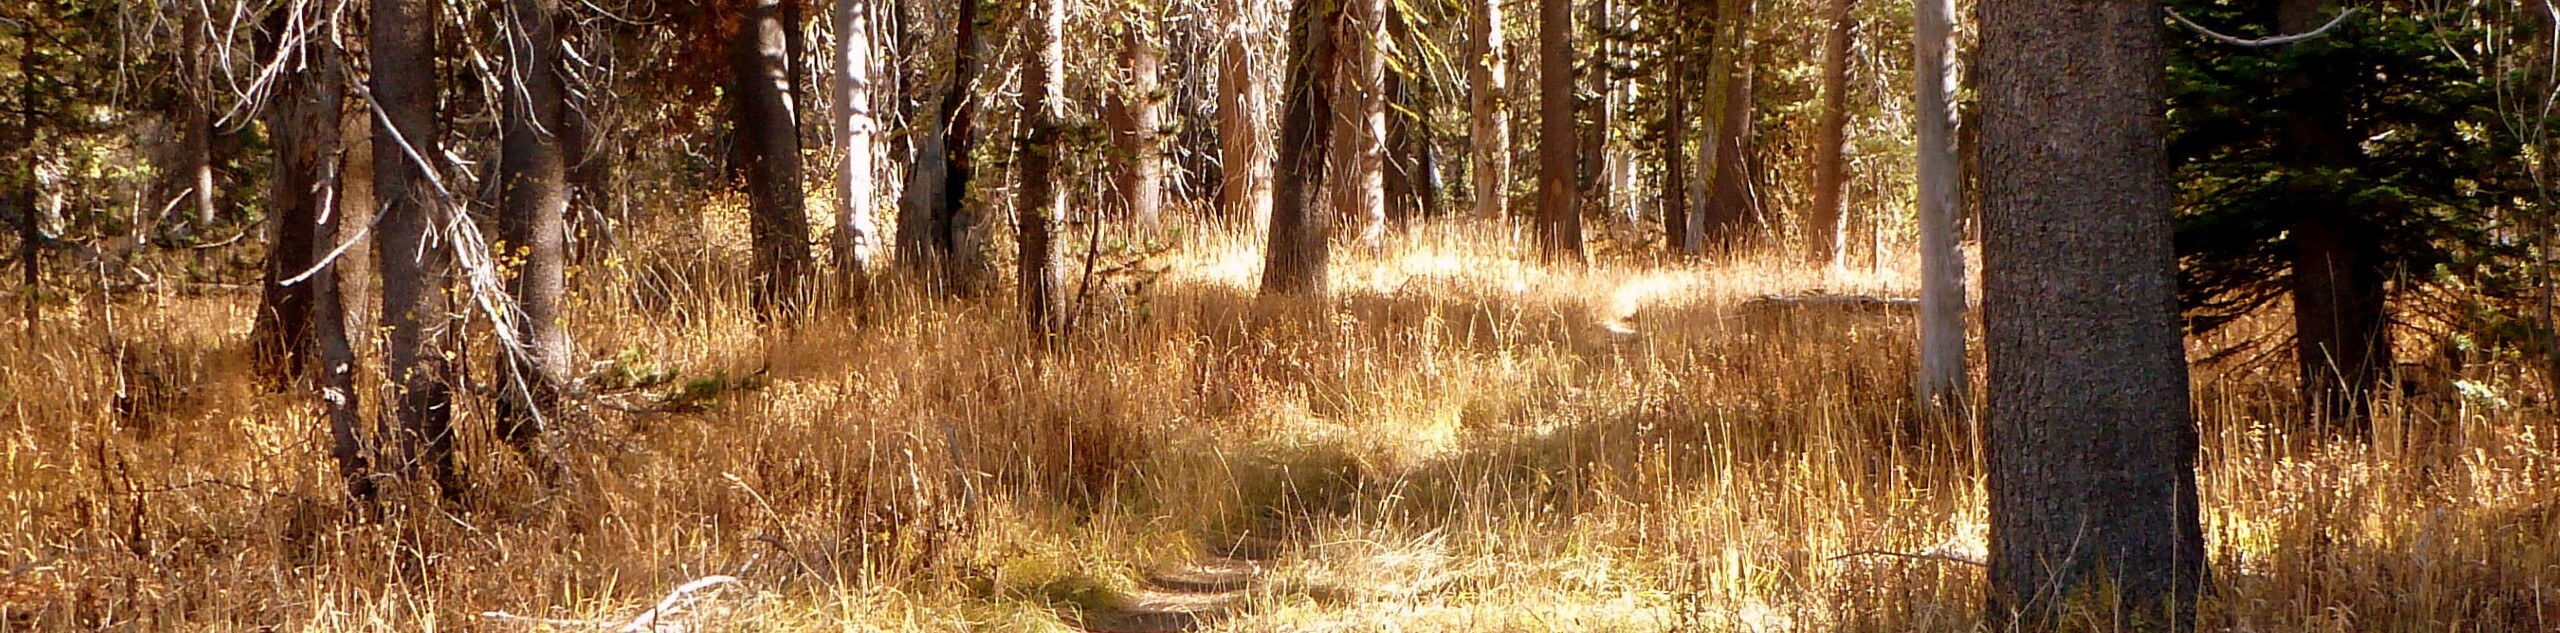 Pohono Trail via McGurk Meadow Hike